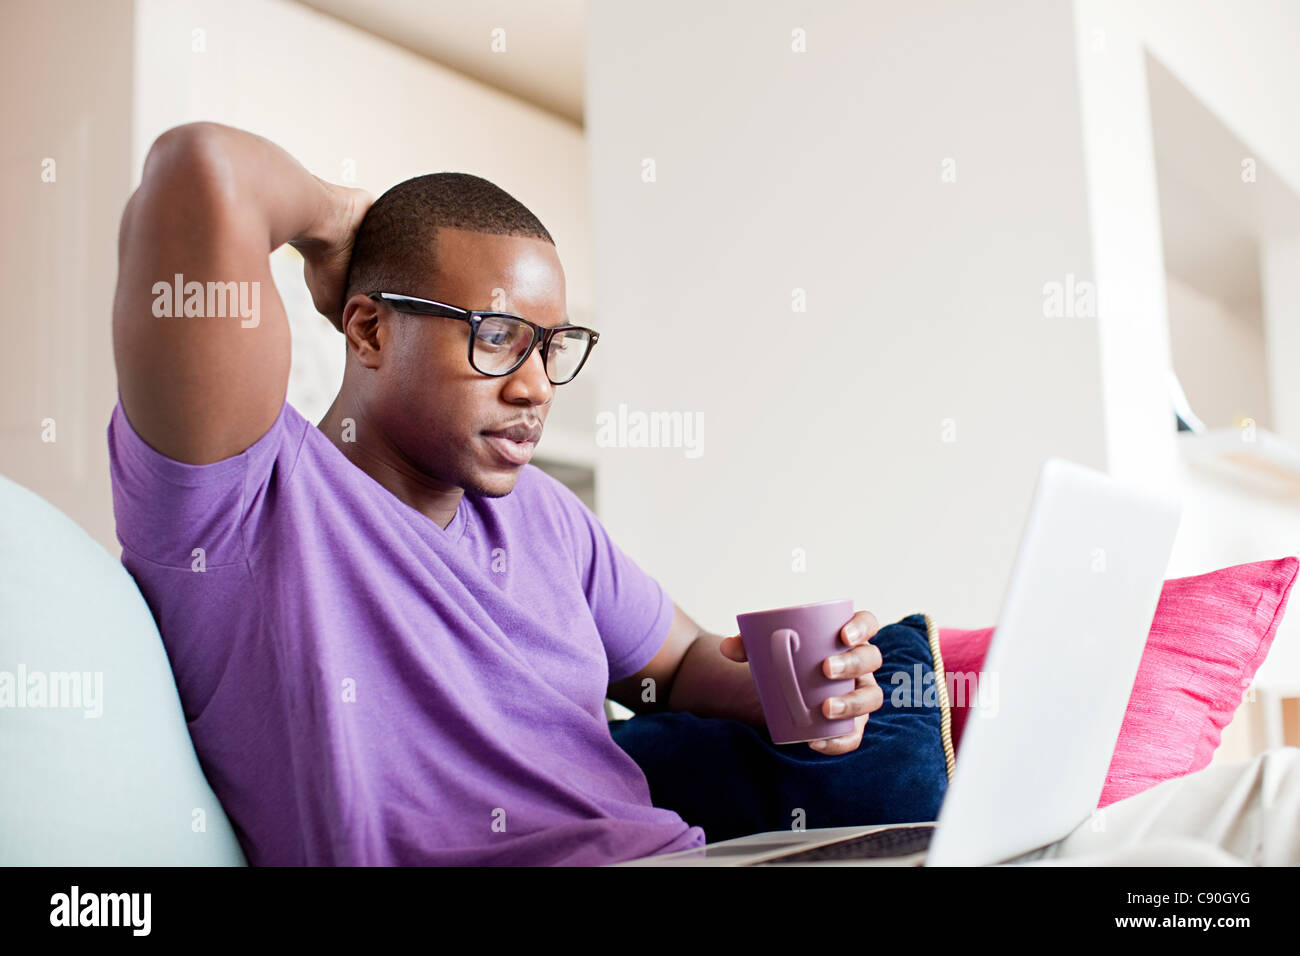 Man using laptop Stock Photo